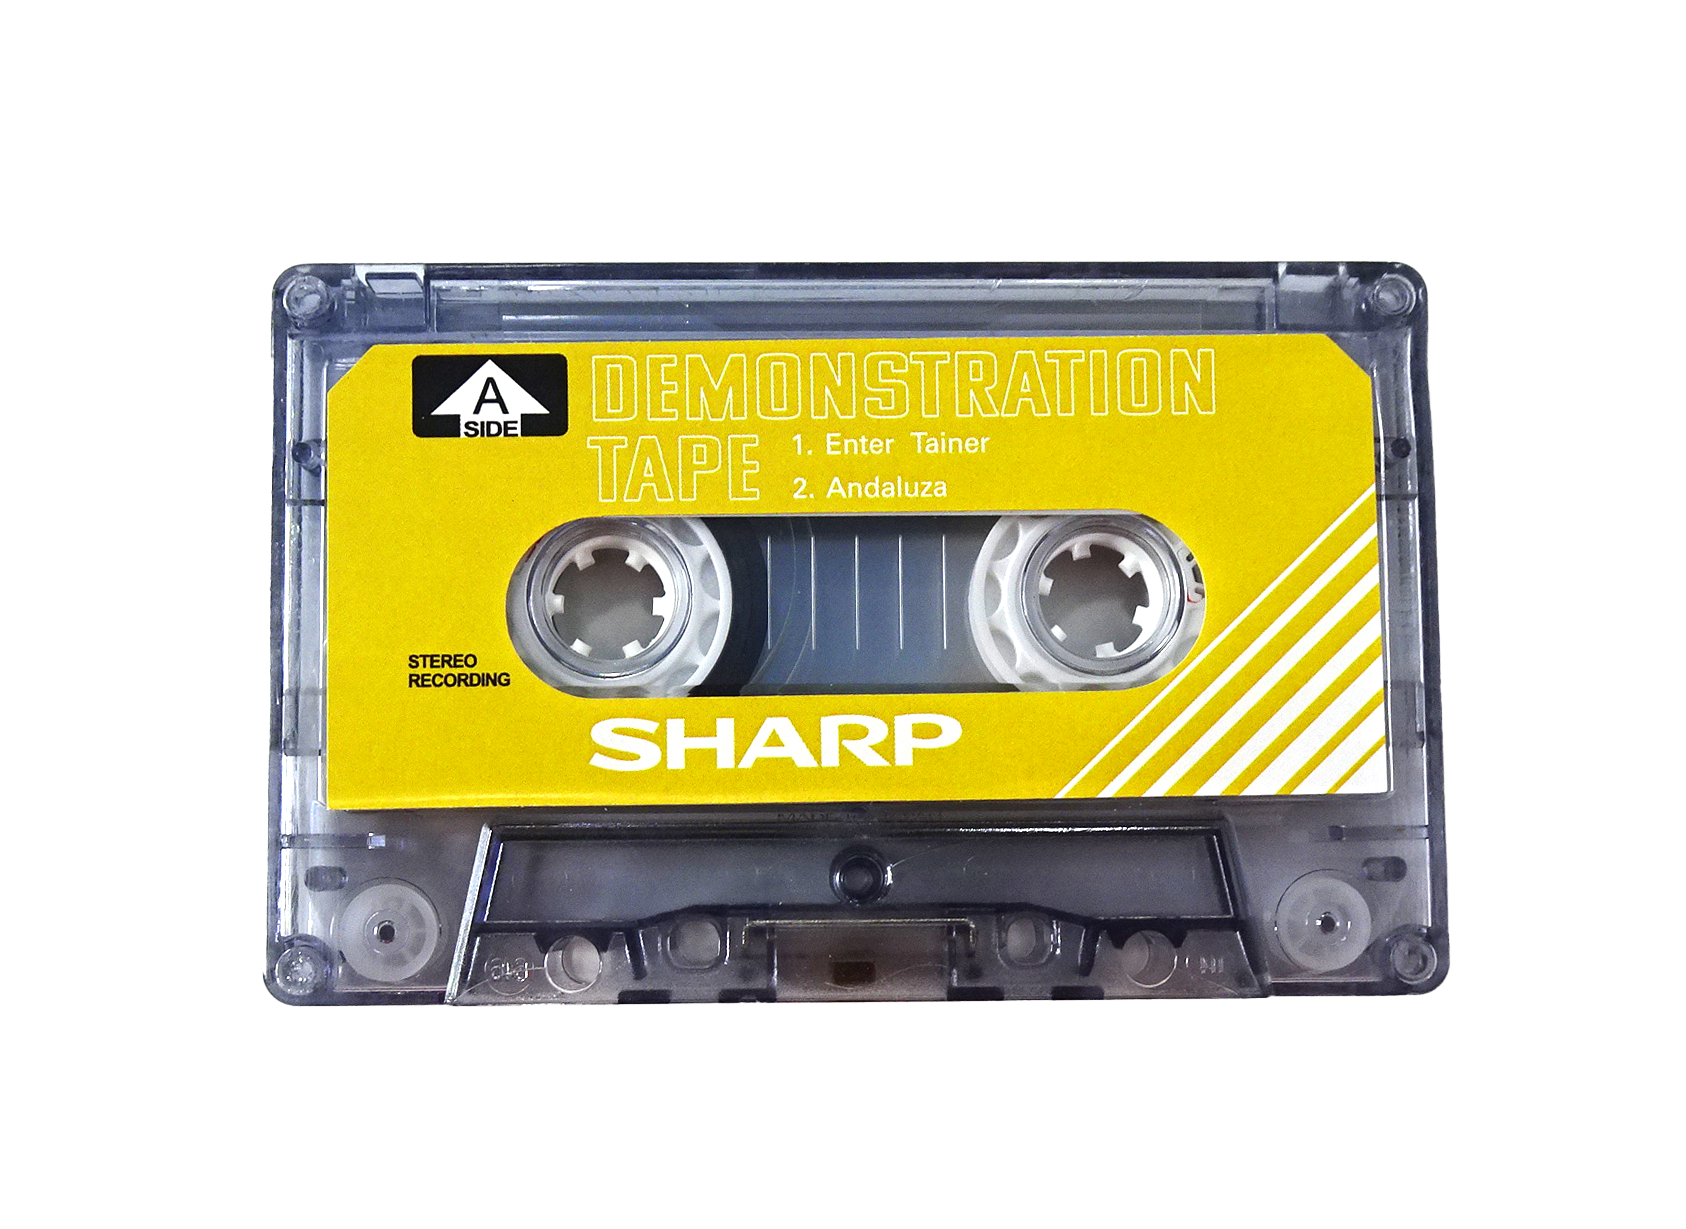 Аудиокассета SHARP демонстрационная жёлтая 10 минутная для магнитофонов SHARP. Бланк.